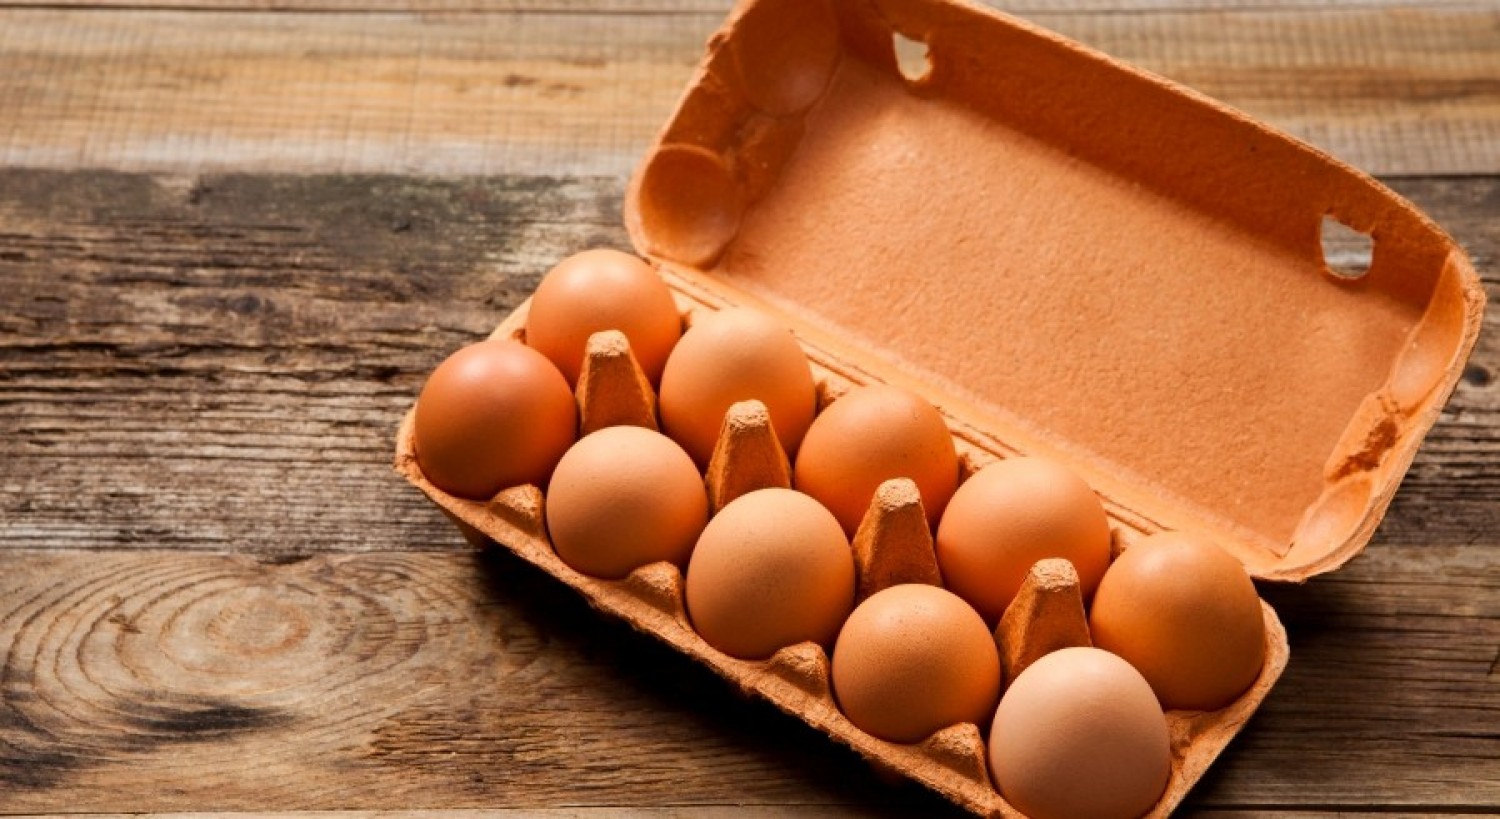 Húsvétra az egekig szökhet a tojás ára